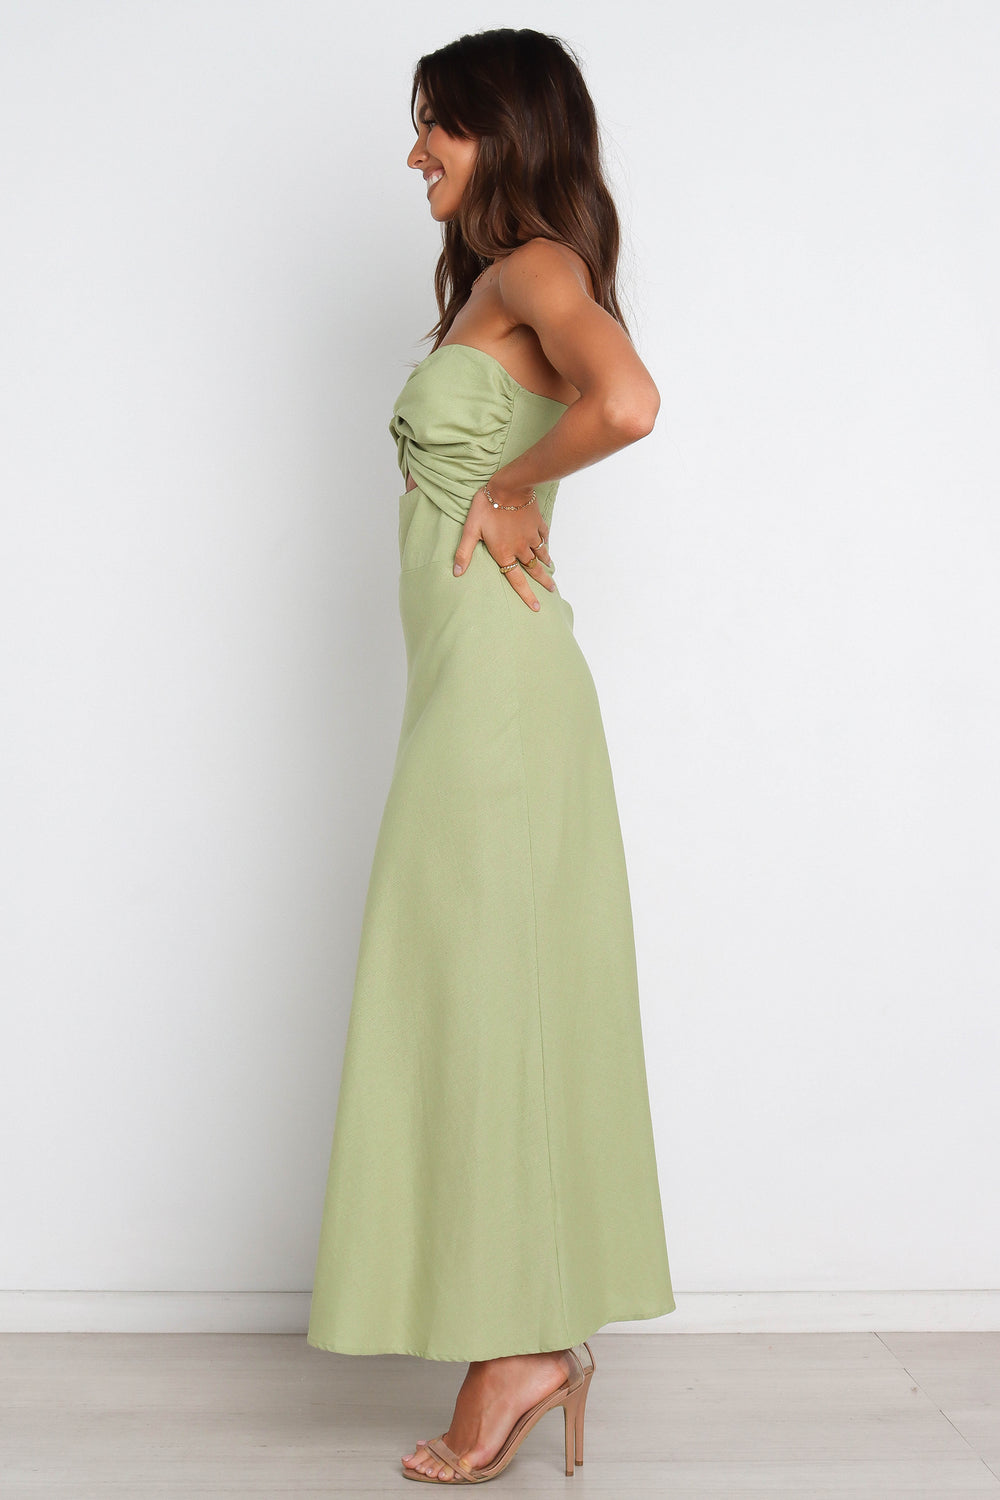 DRESSES @Rosetta Dress - Olive (waiting on bulk)